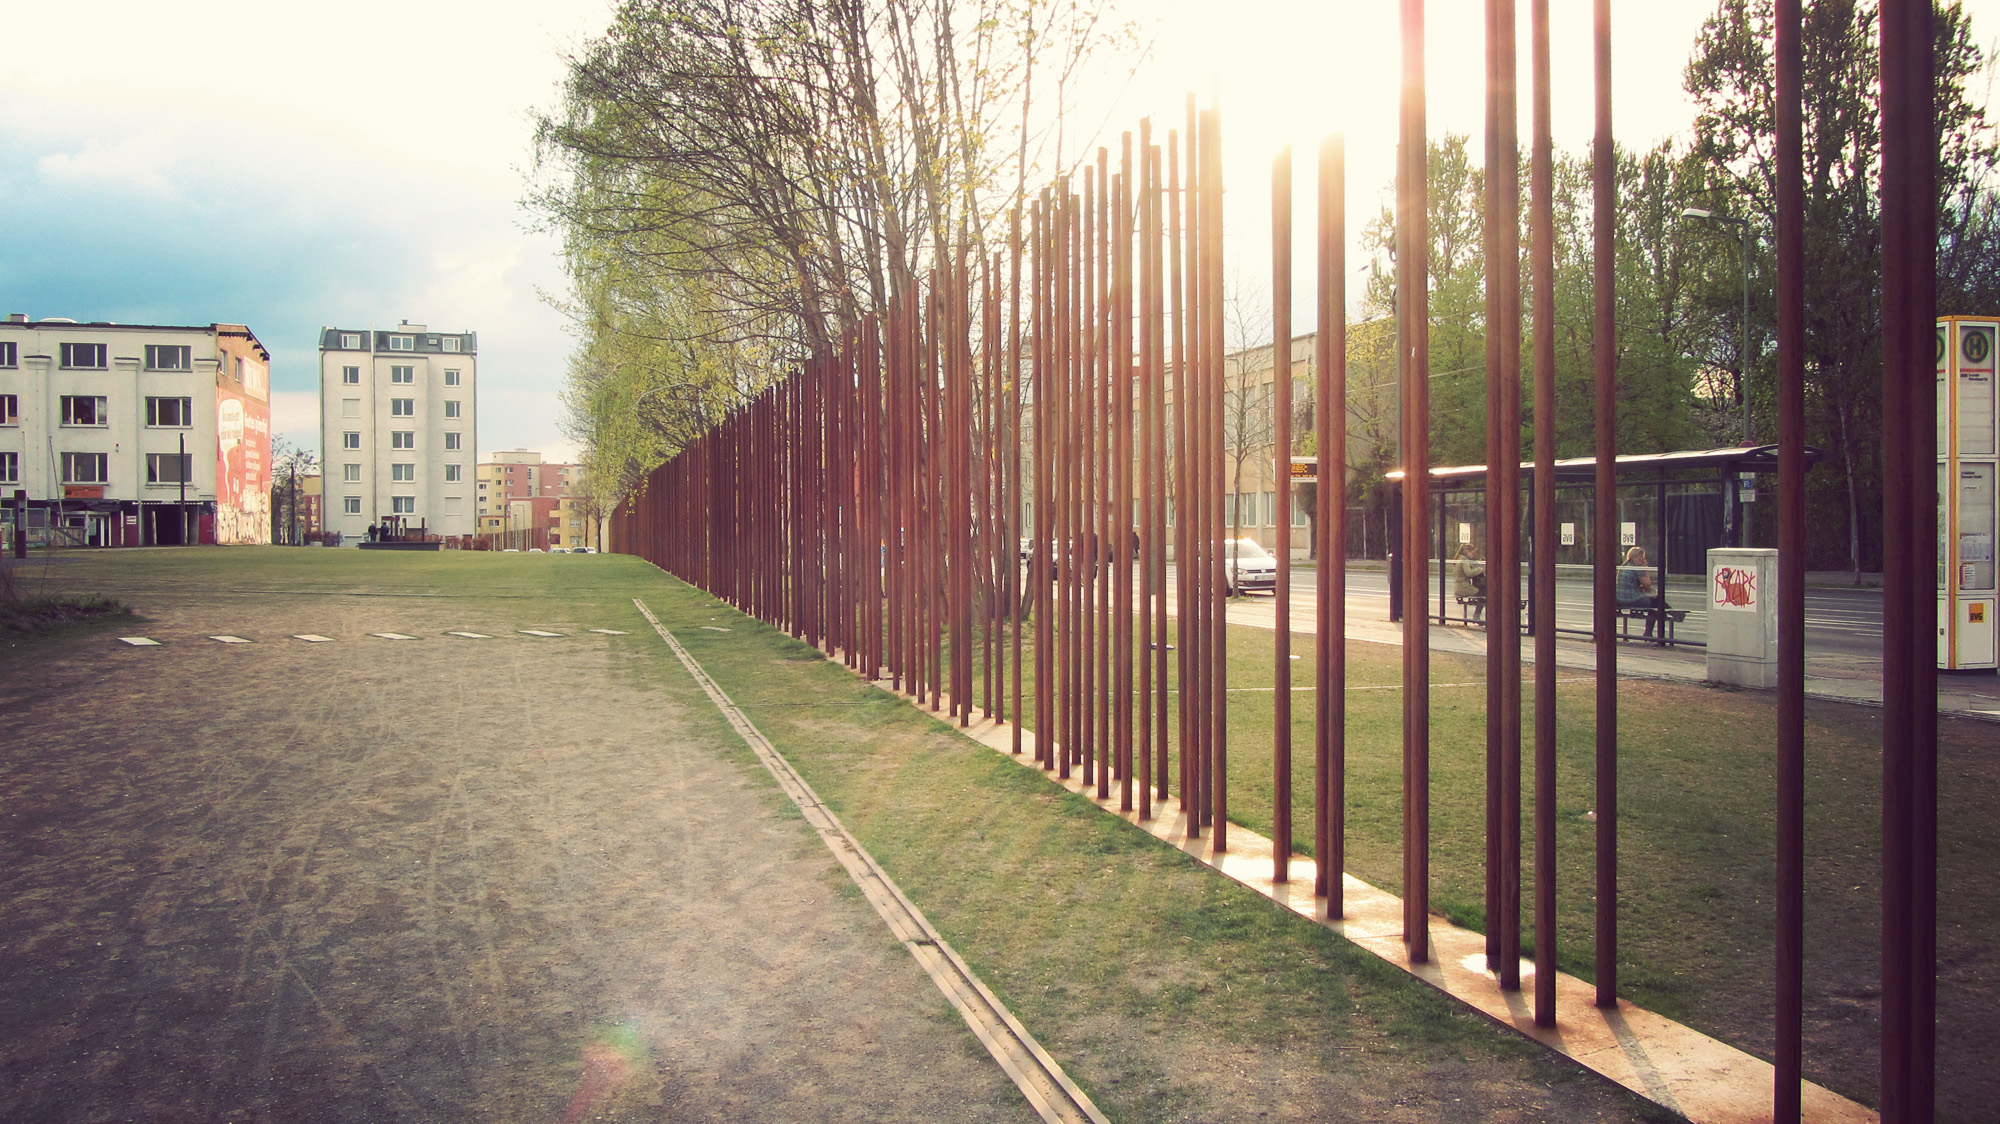 الاماكن السياحية في برلين النصب التذكاري لجدار برلين